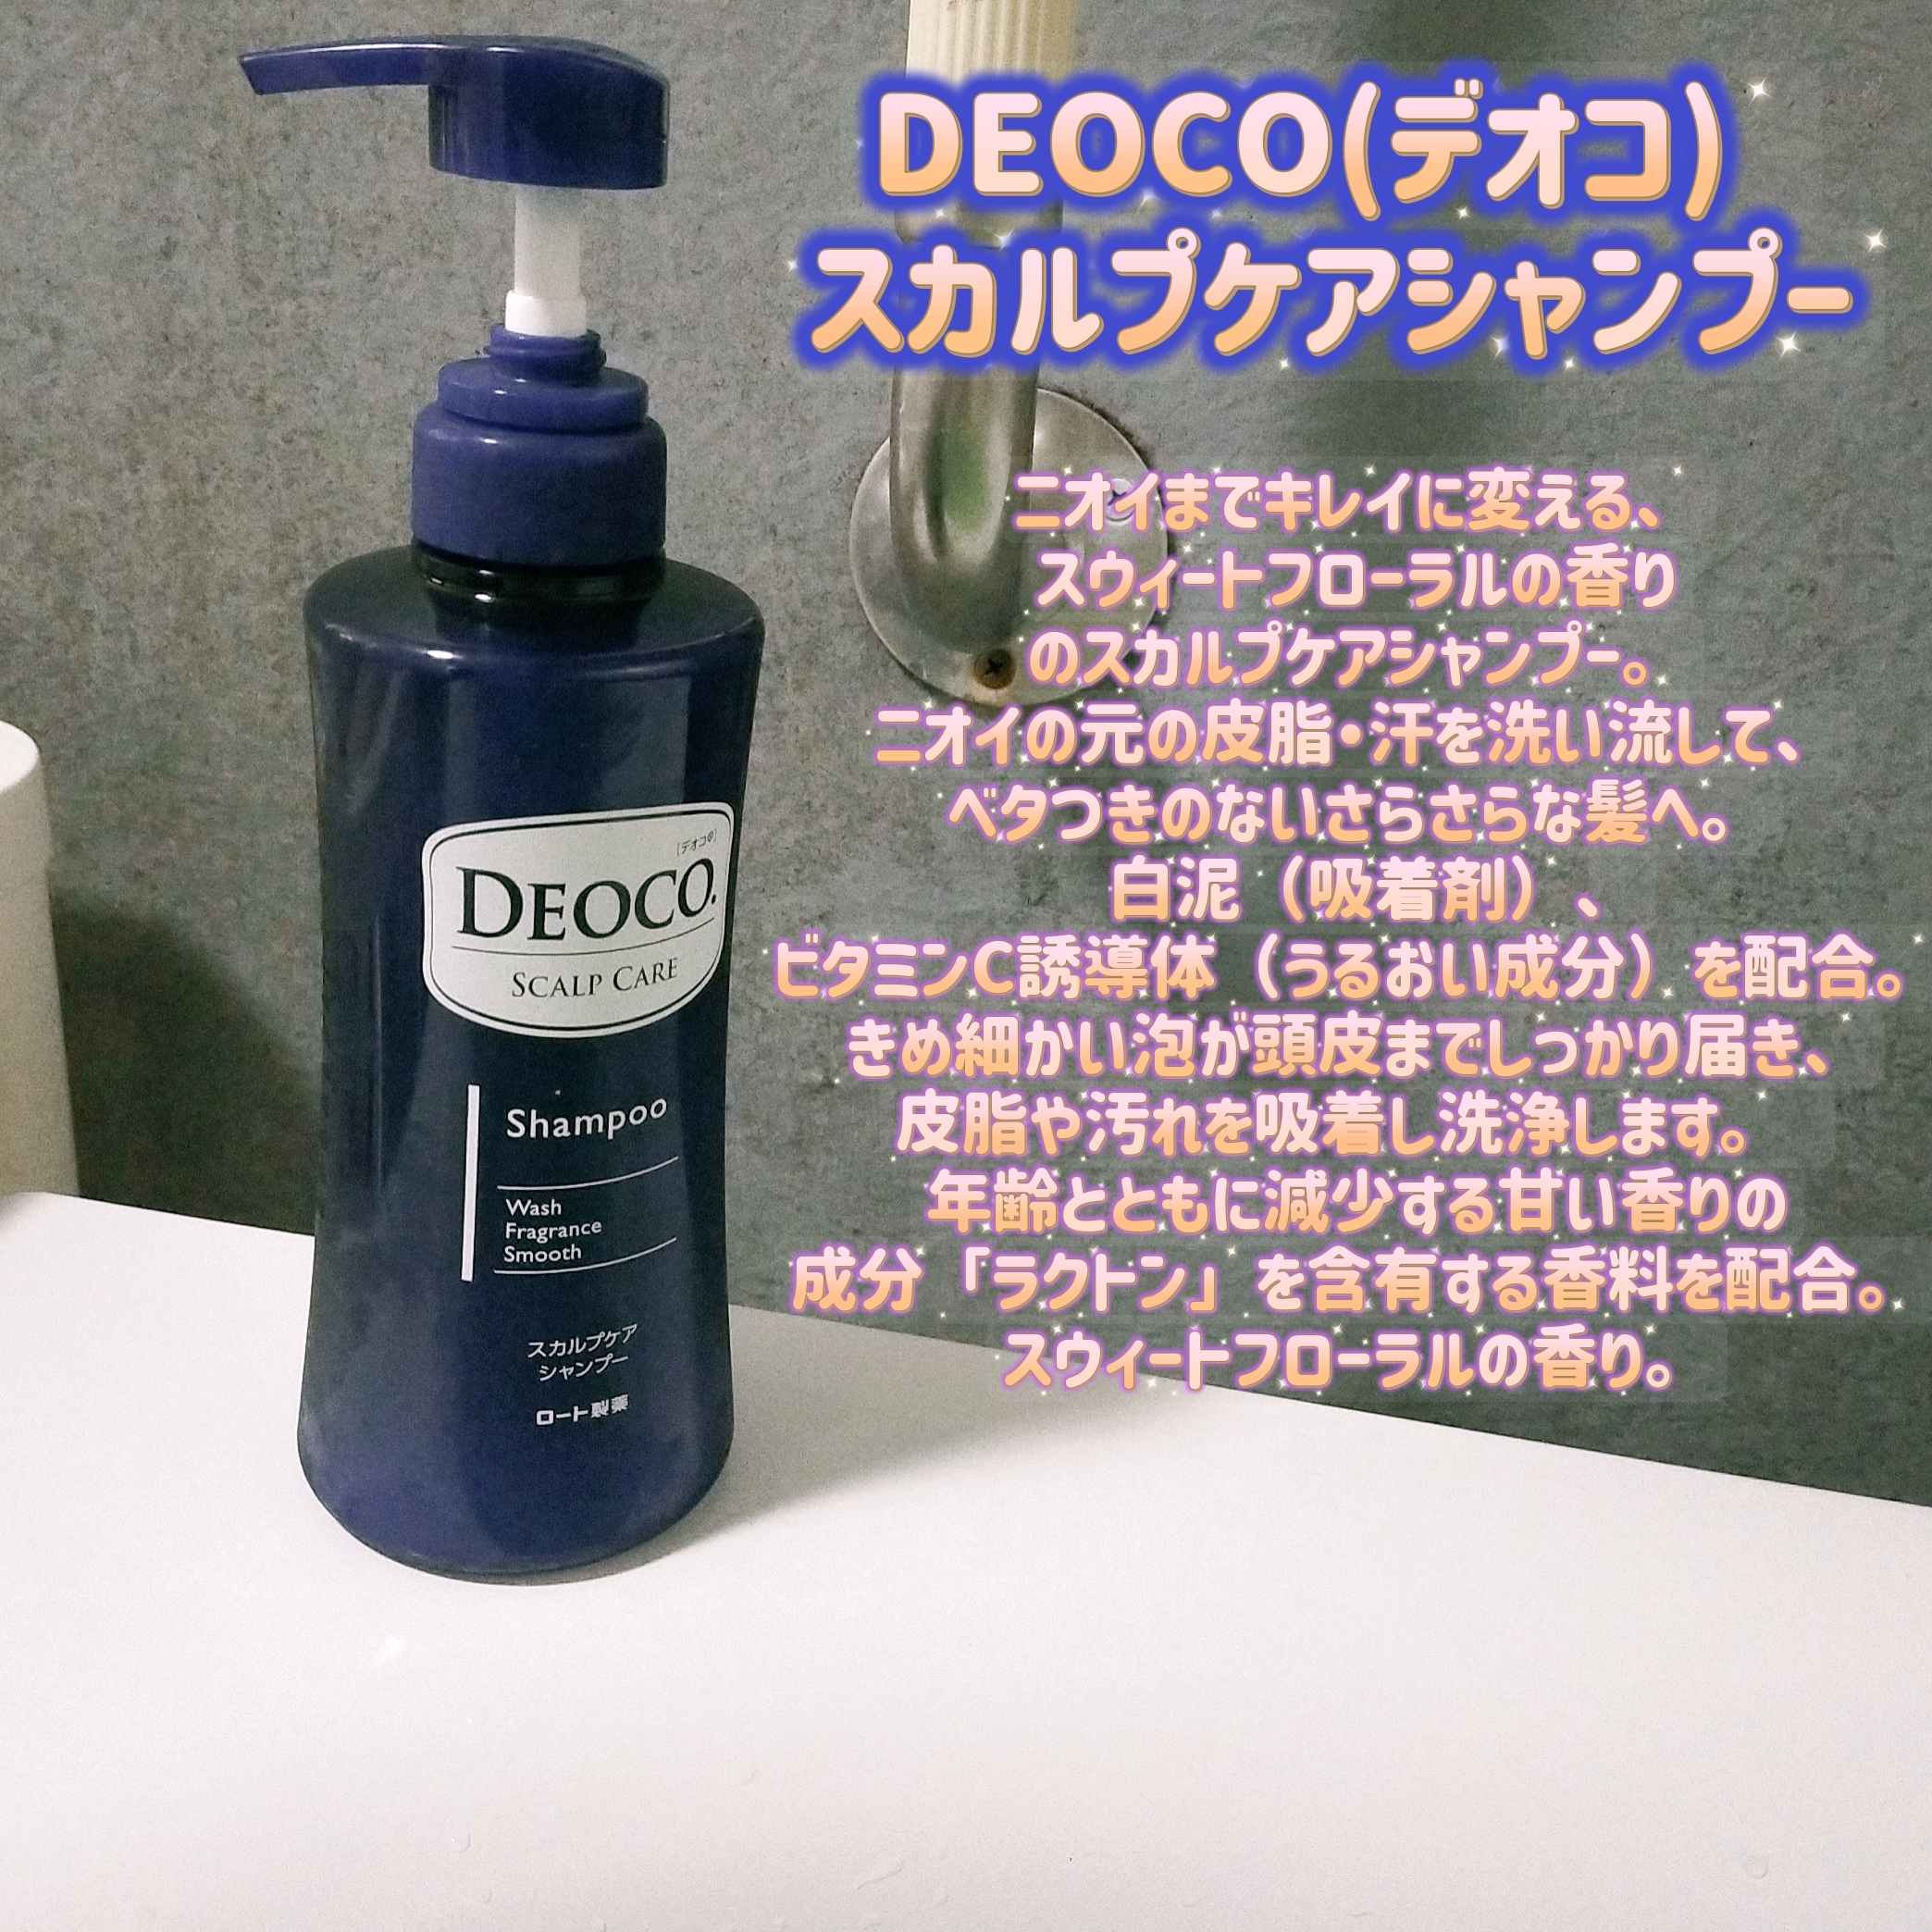 DEOCO(デオコ) スカルプケアシャンプーの良い点・メリットに関するみこさんの口コミ画像1